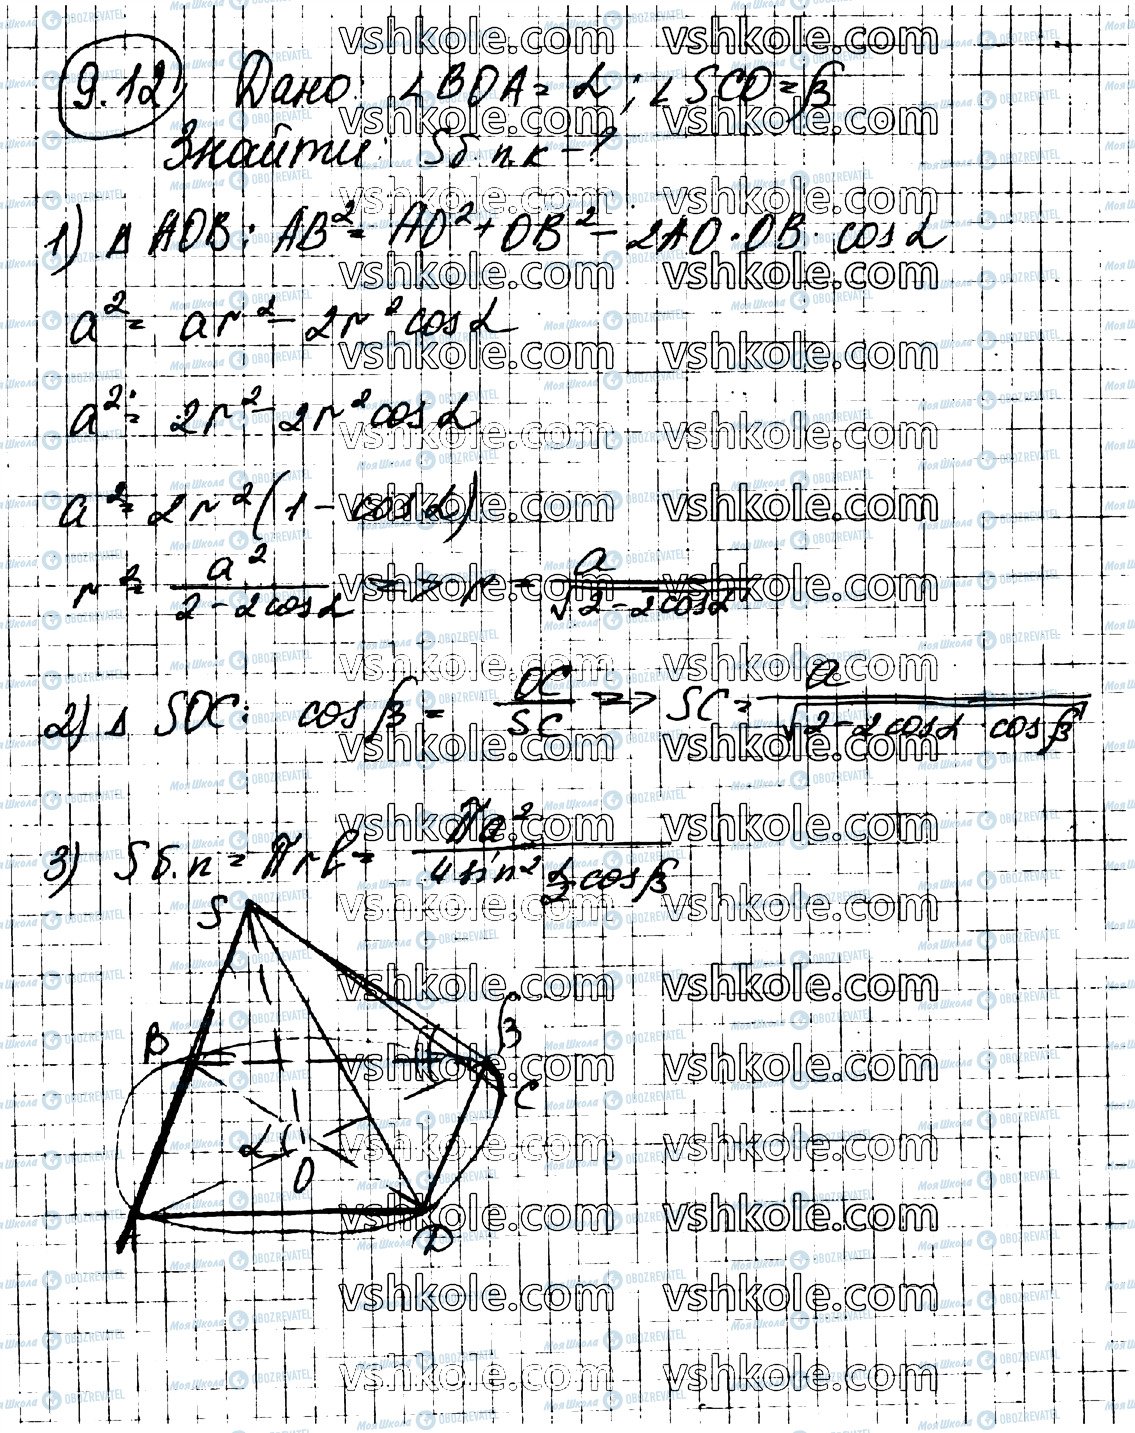 ГДЗ Геометрия 11 класс страница 12